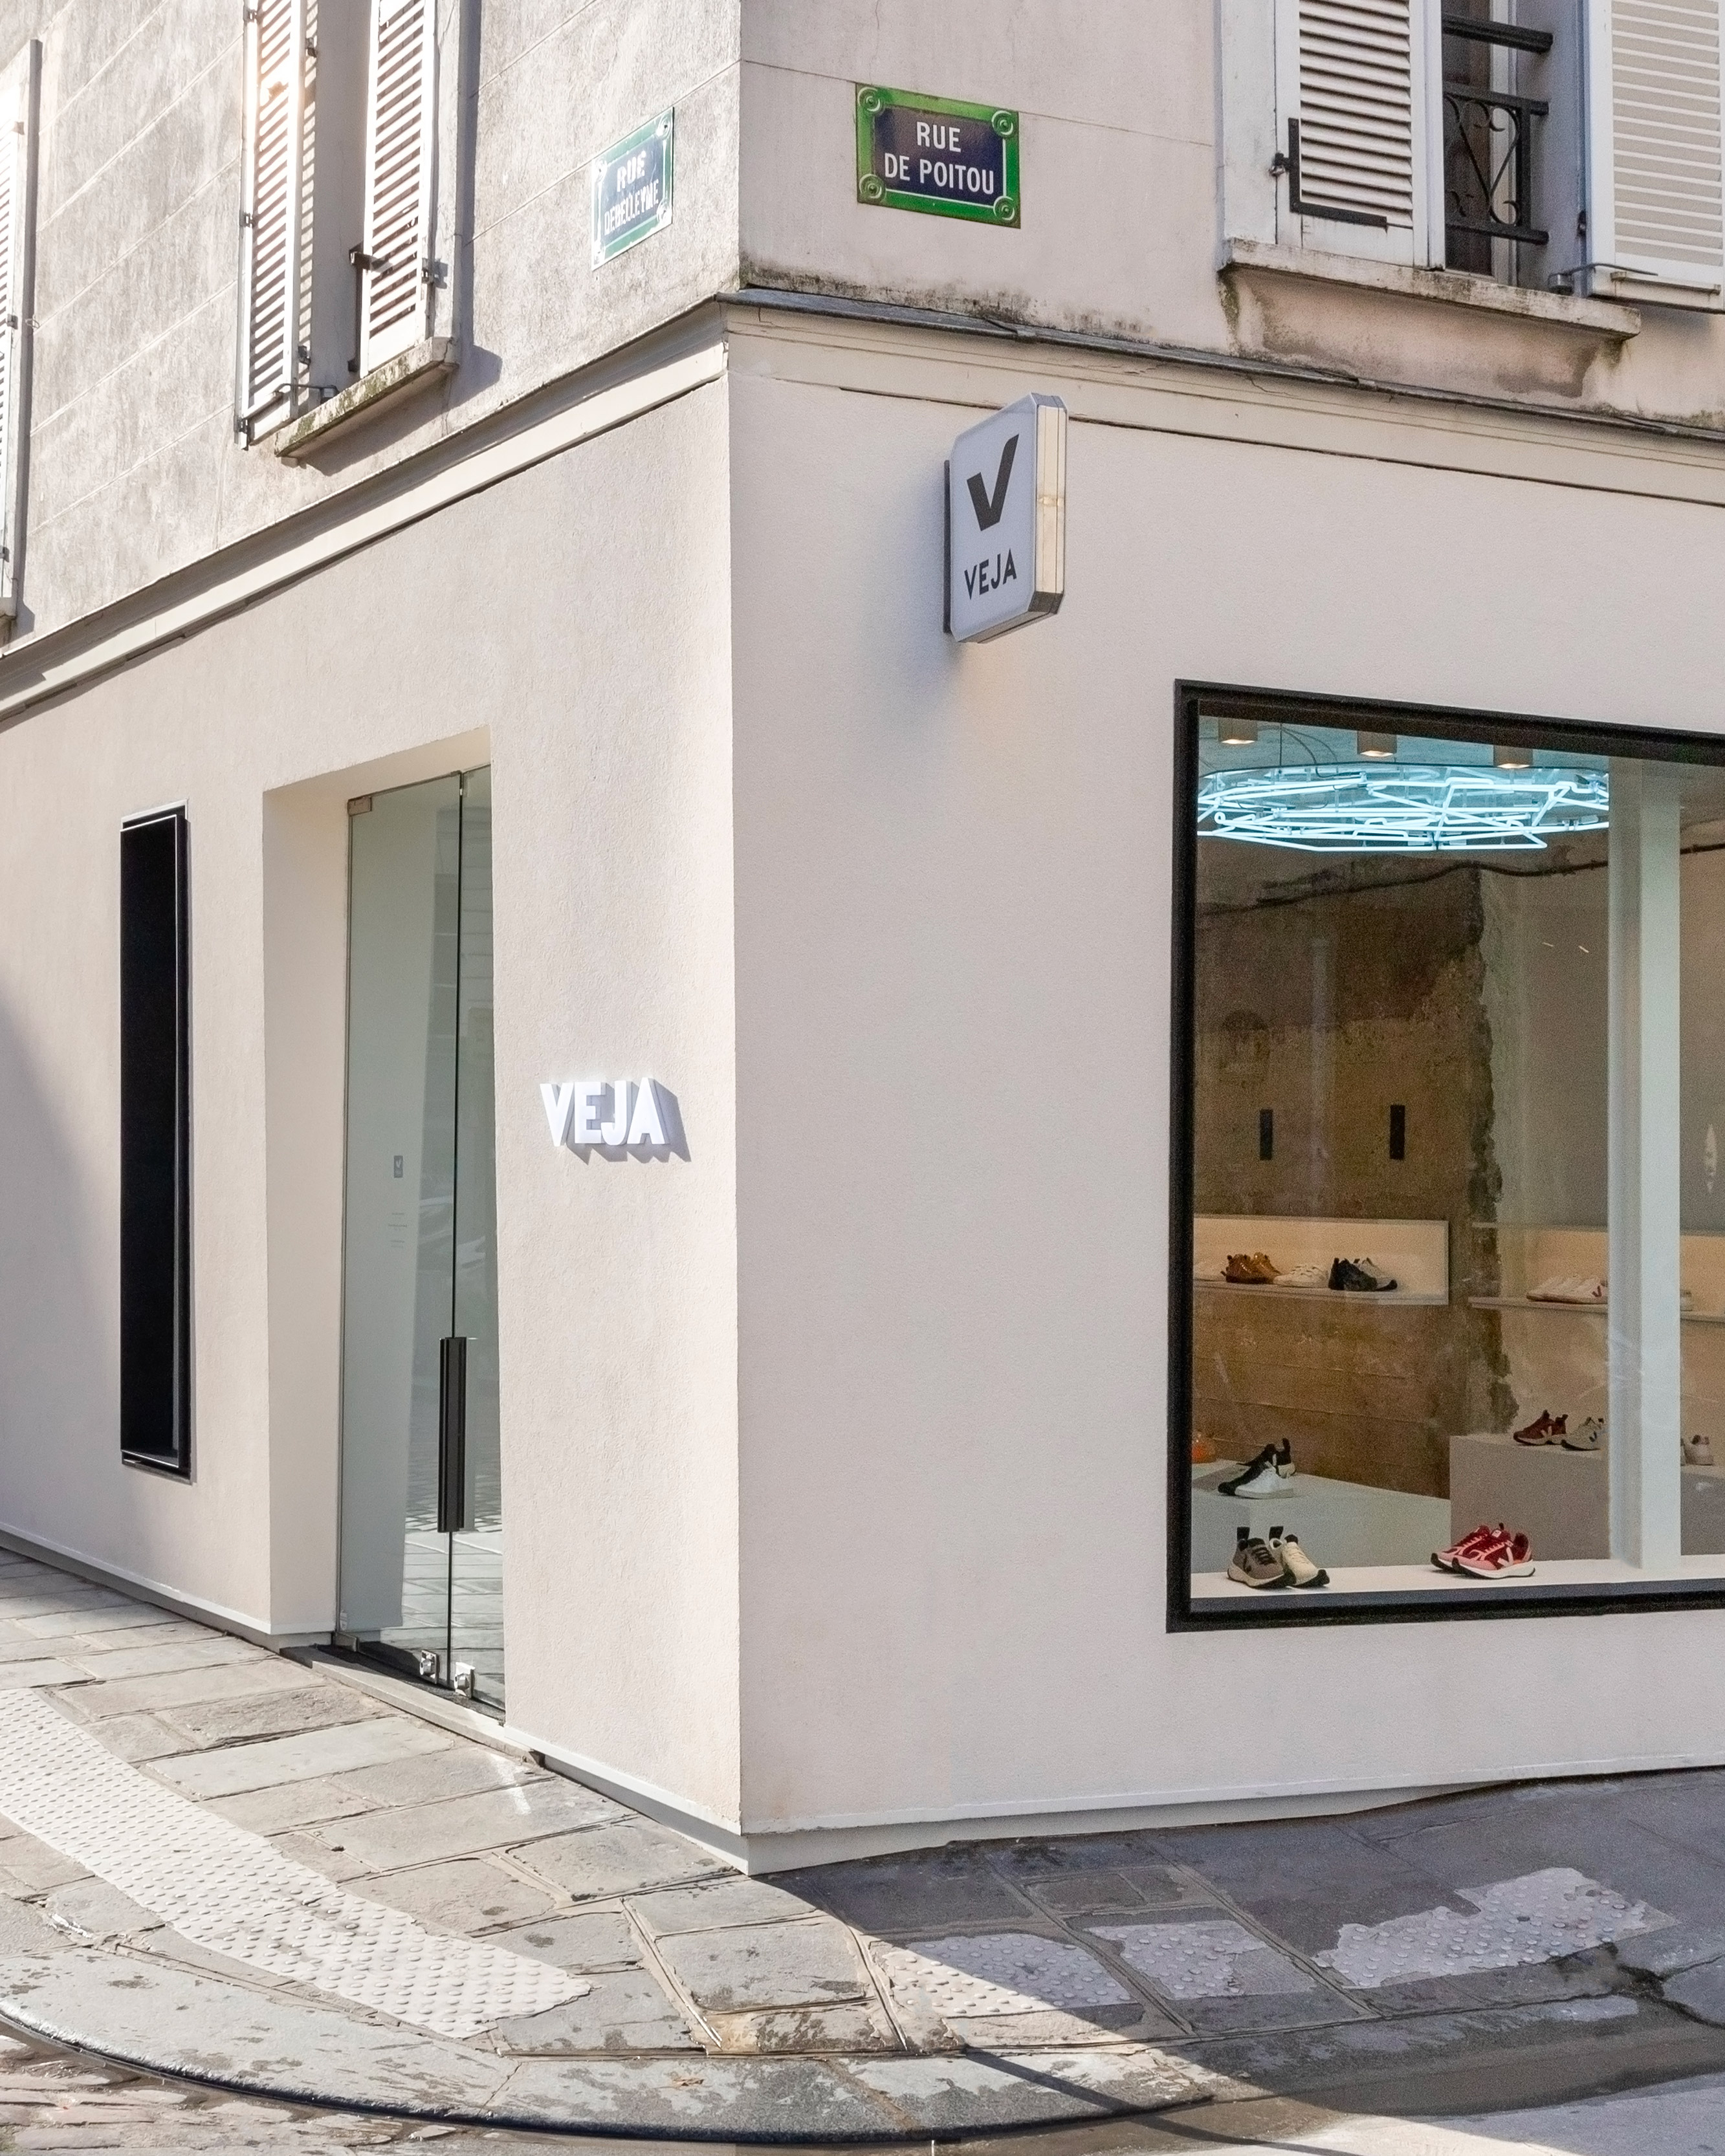 VEJA on Twitter: "➡️Retrouvez-nous à nos heures d'ouverture habituelles : 🚩 VEJA Store (15 rue de Poitou 75003 Paris) 🚩@centre_commercial (2 rue de  Marseille 75010 &amp; 9 rue Madame 75006 Paris). #veja #vejastore